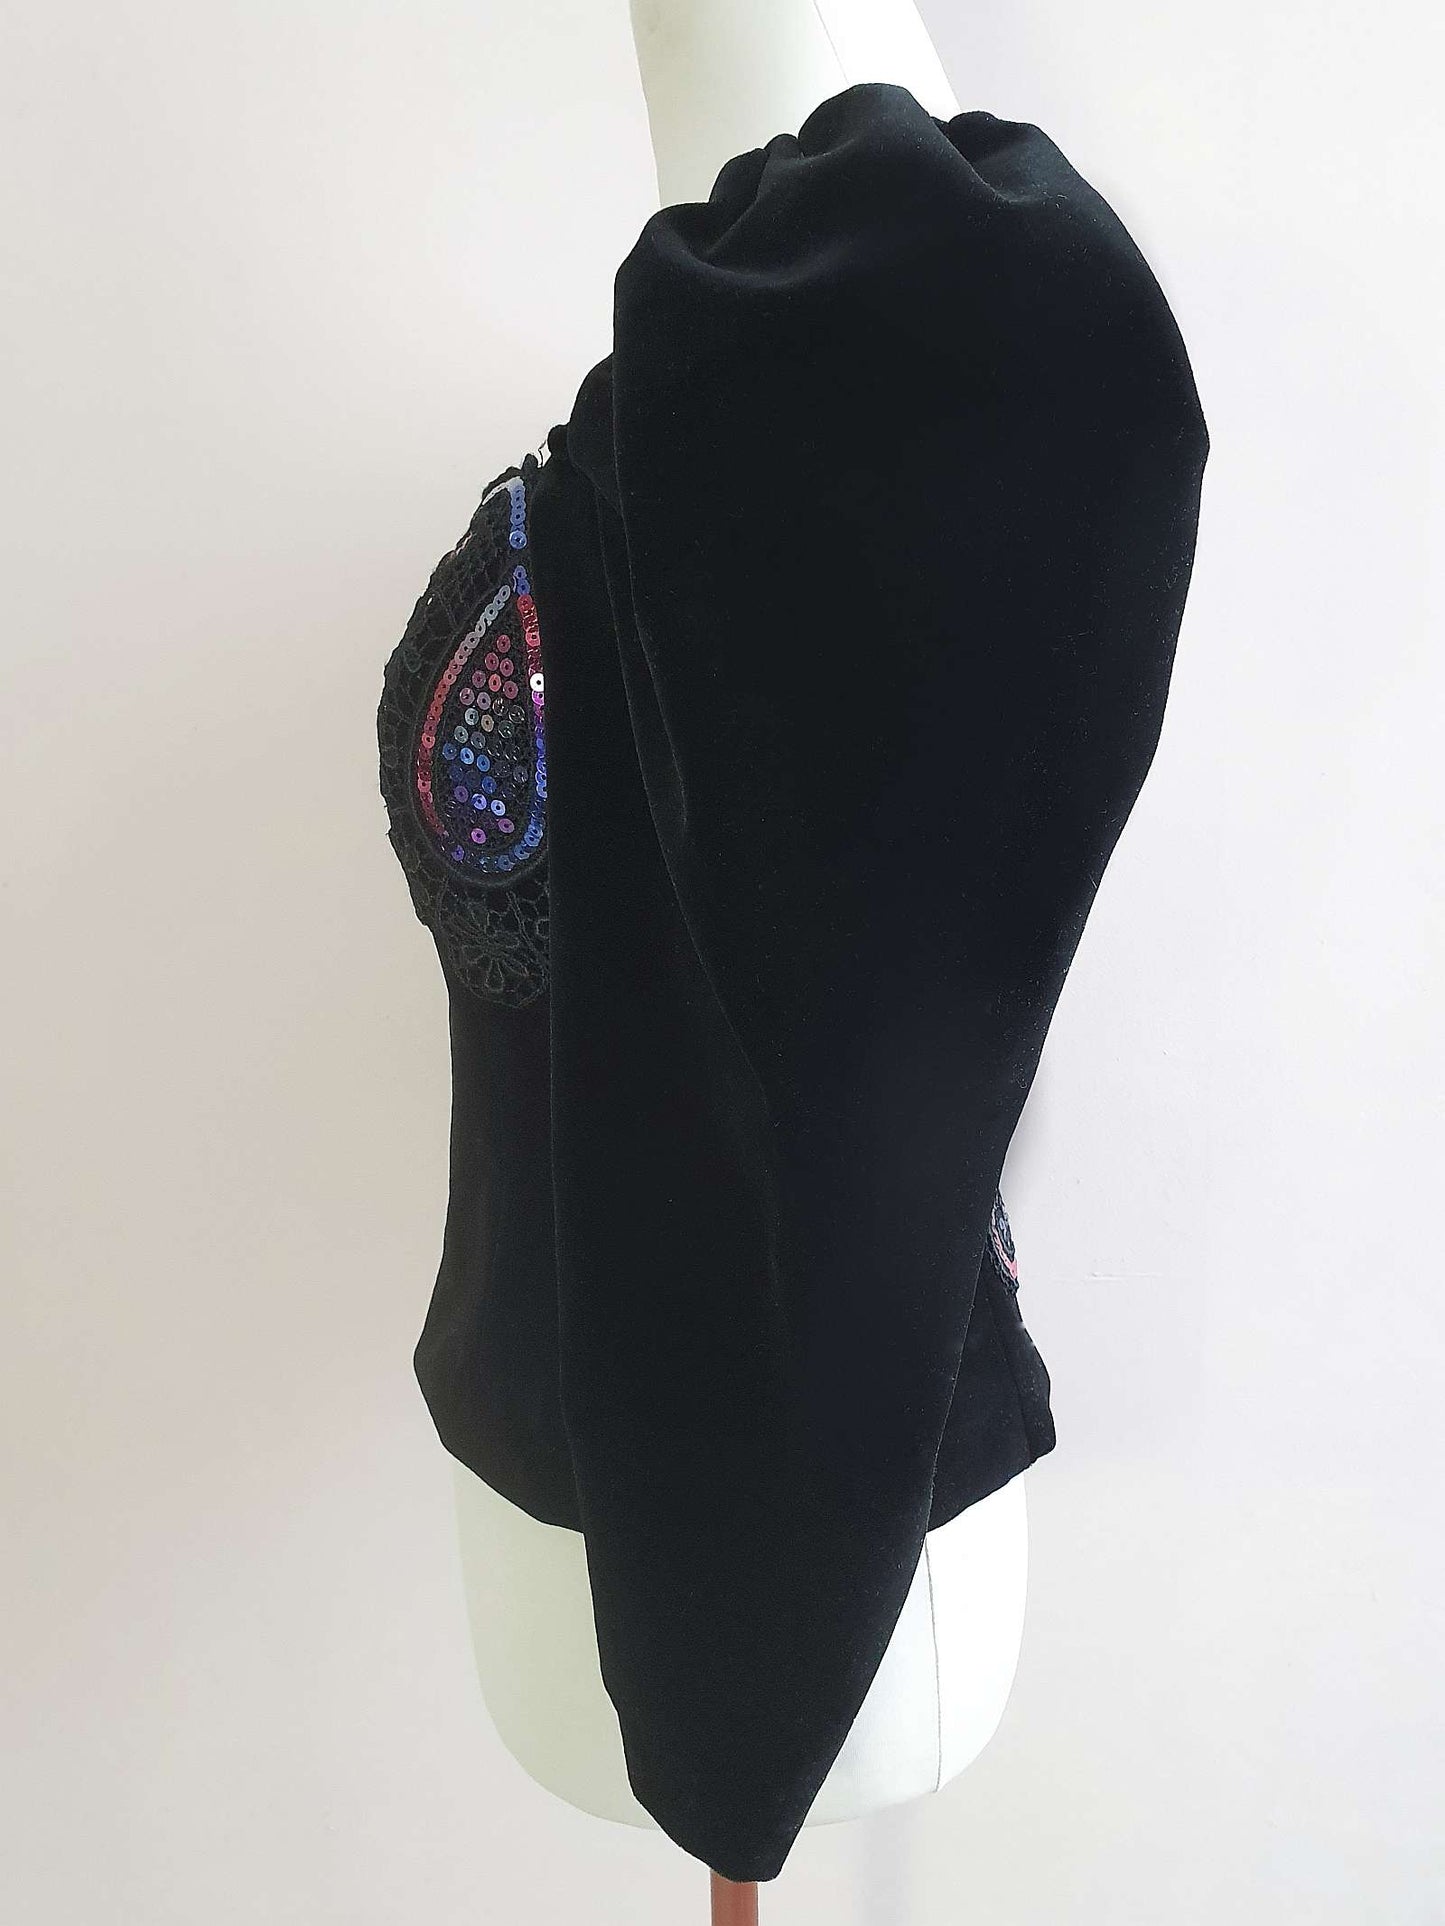 1980s Black Velvet Top - Size 10 Lace Sequin